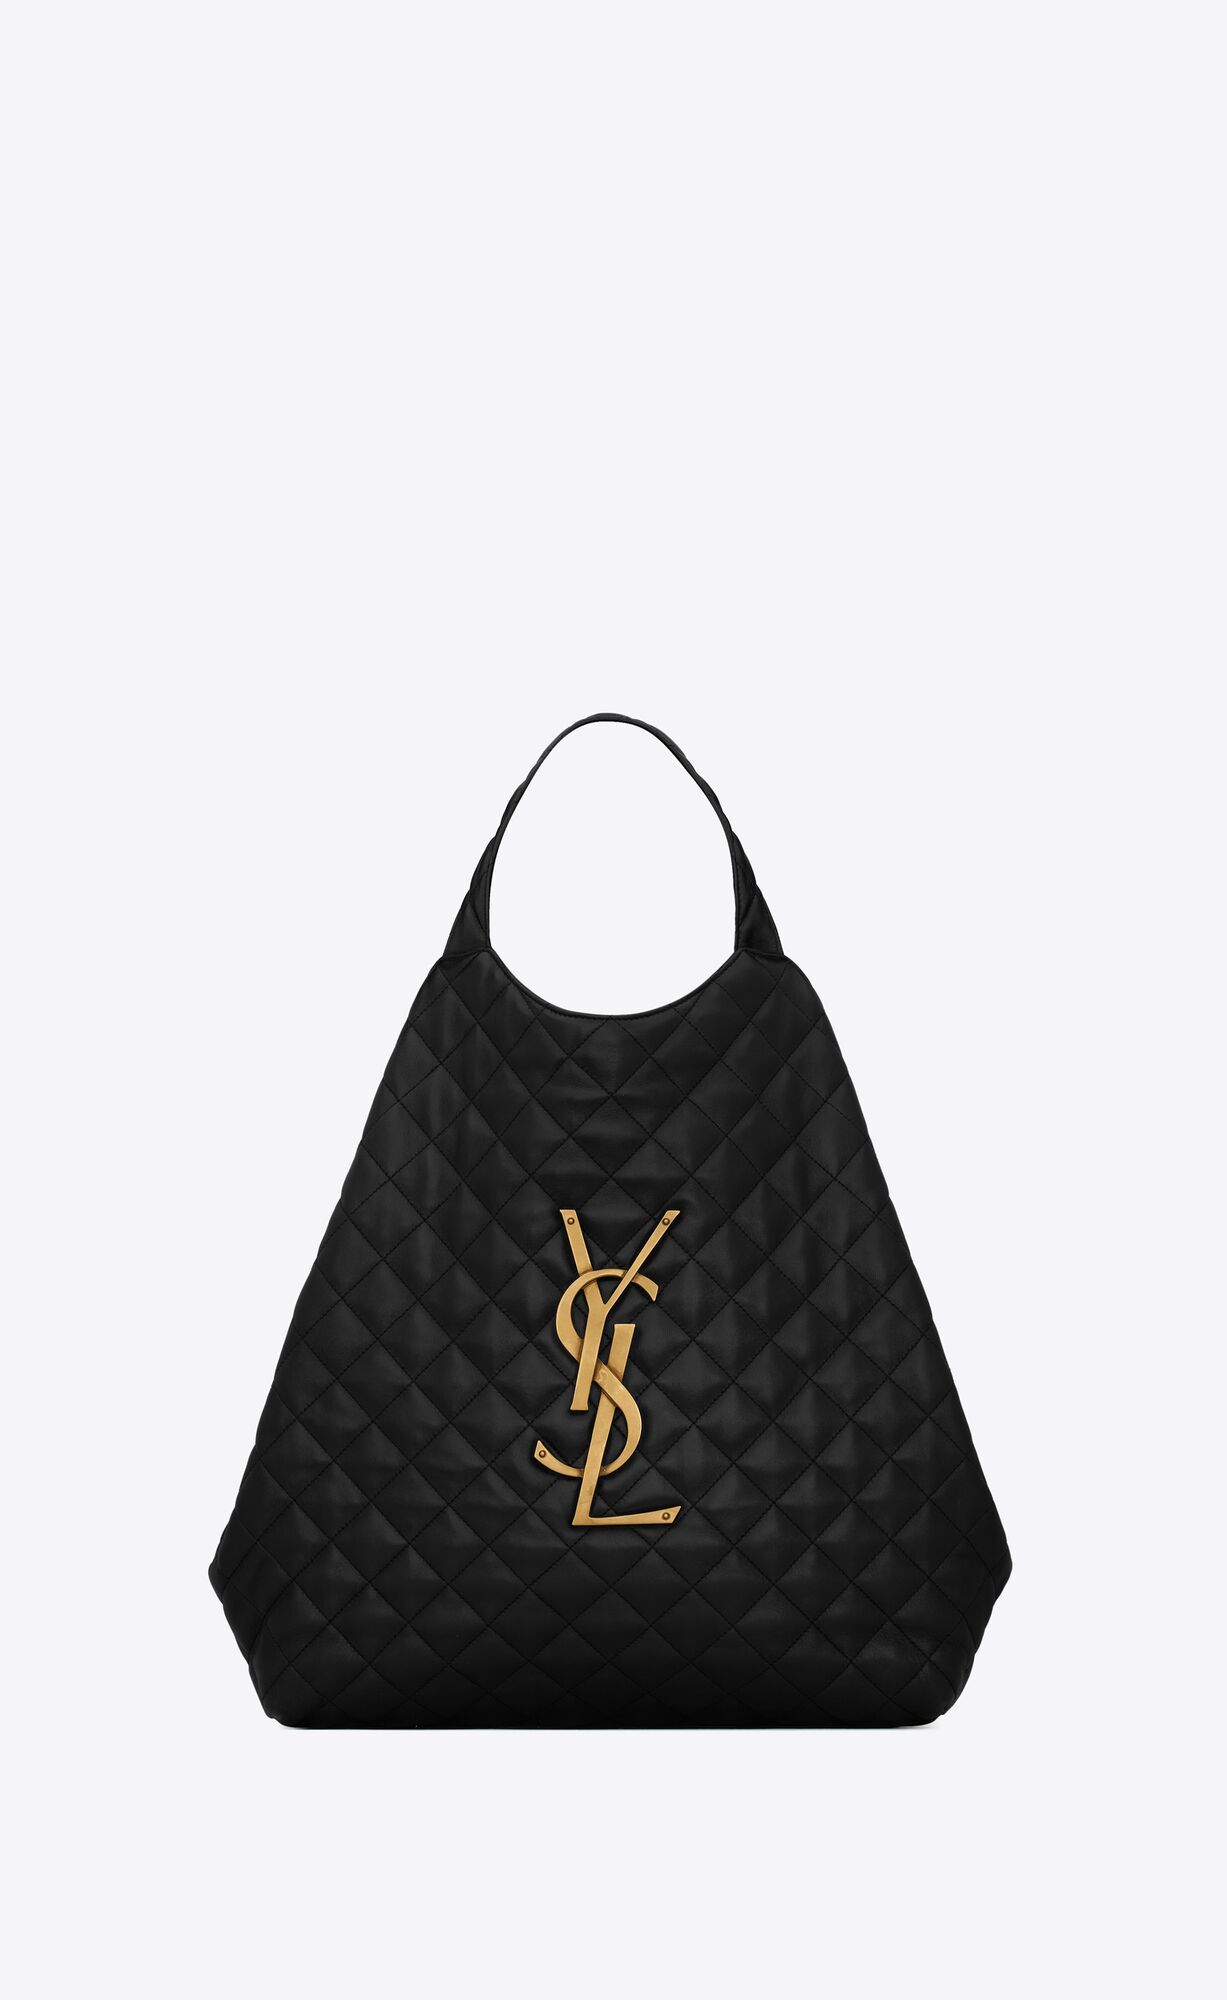 Black Leather Ysl Sling Bag For Office